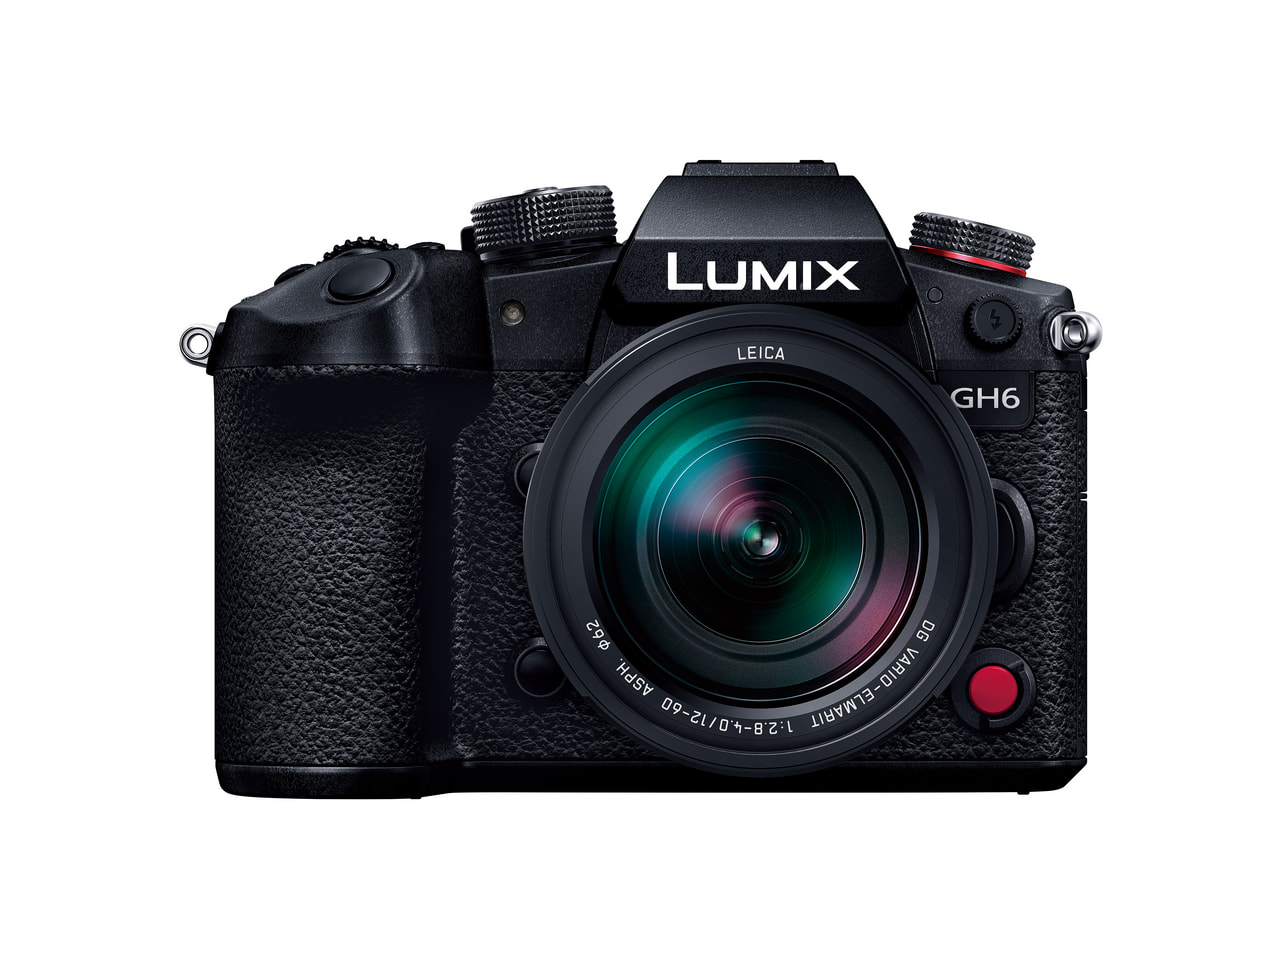 lumix camera